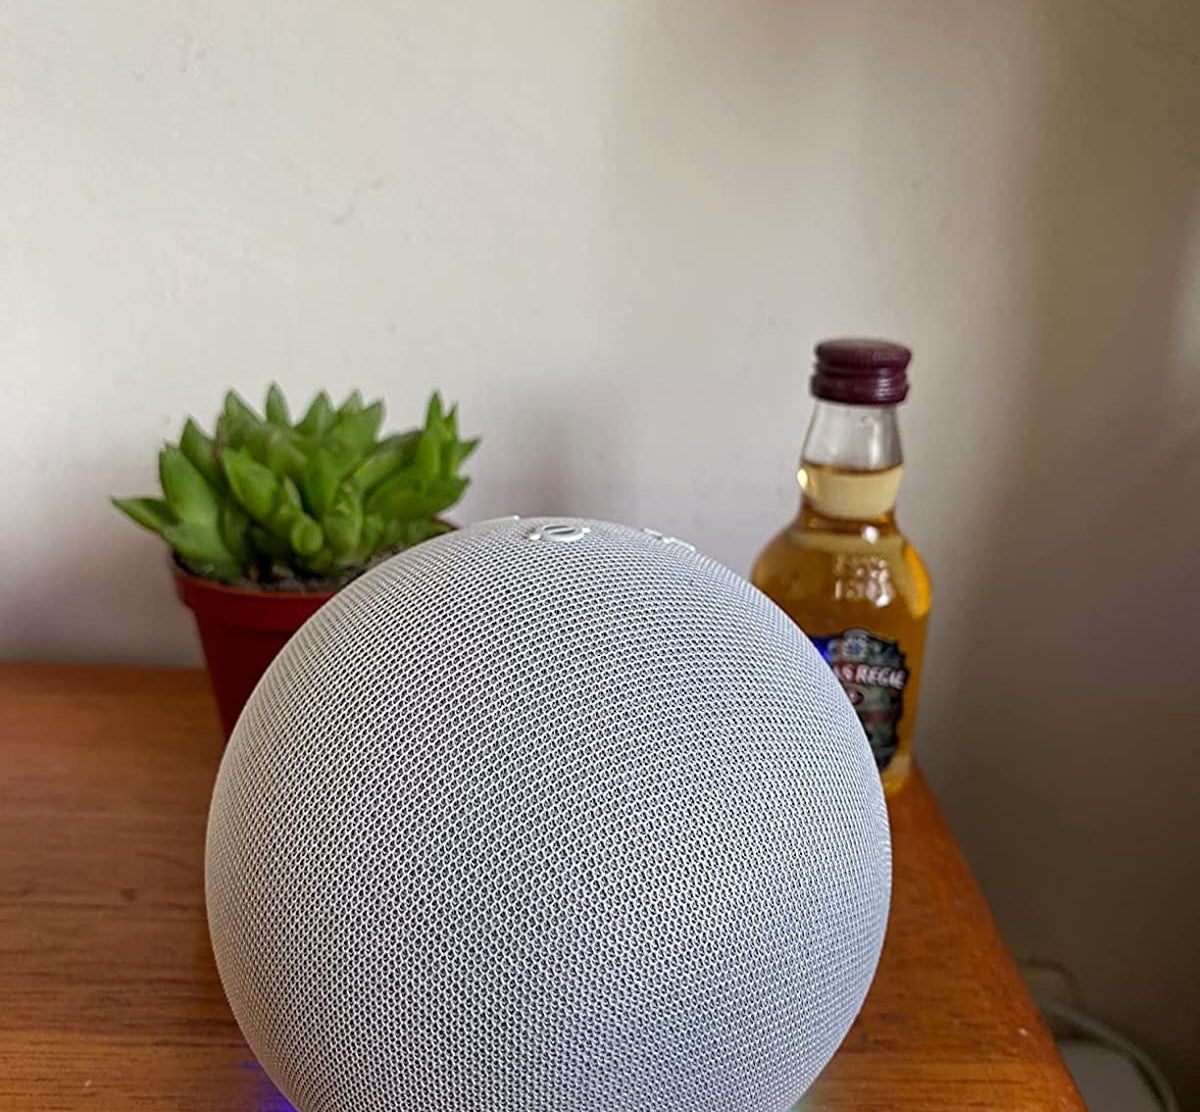 The white Echo Dot speaker on table